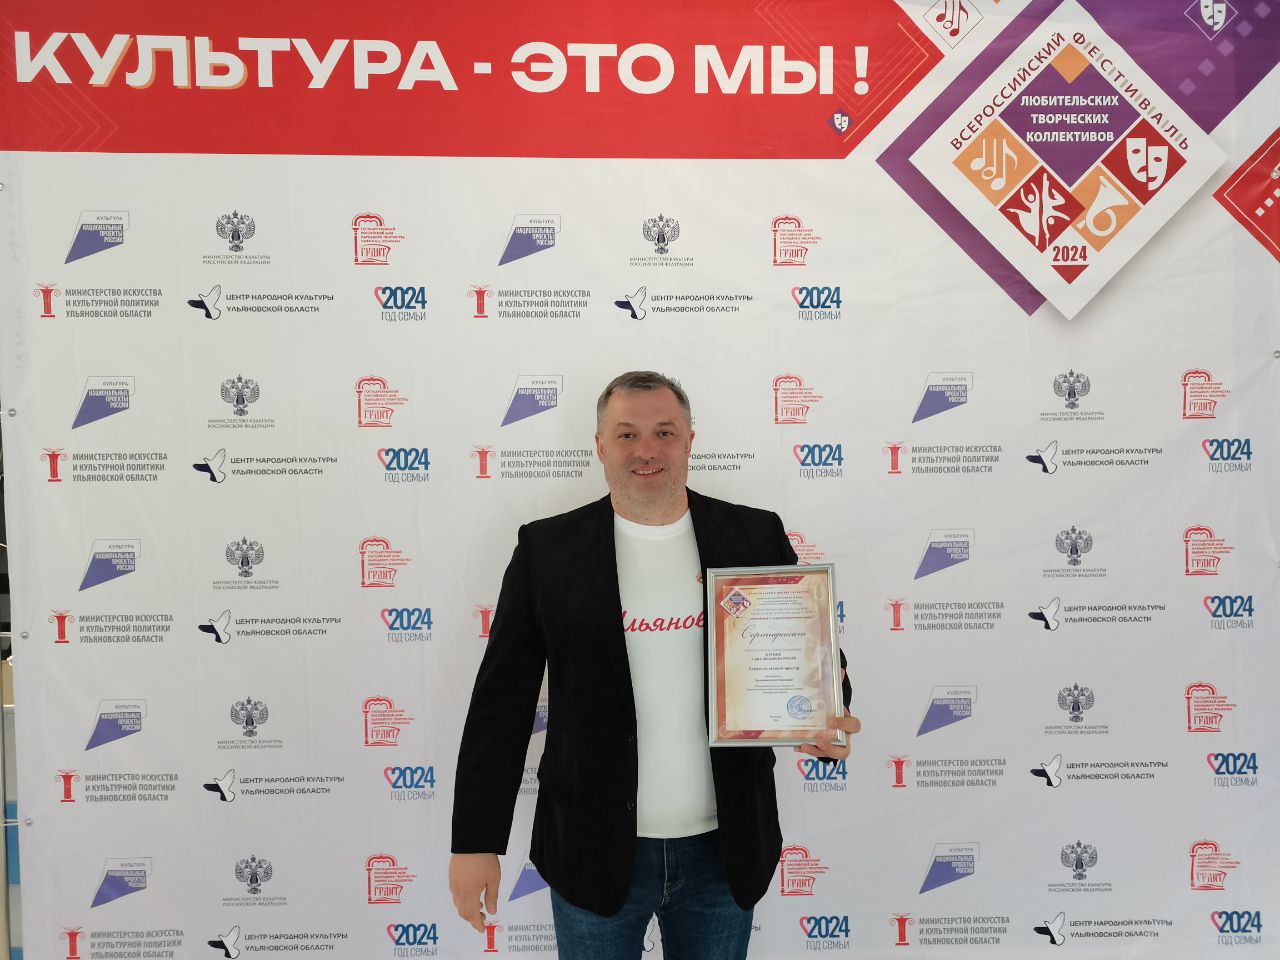 Народный духовой оркестр  под управлением Дениса Гиргилижиу выиграл 2 млн рублей на Всероссийском фестивале